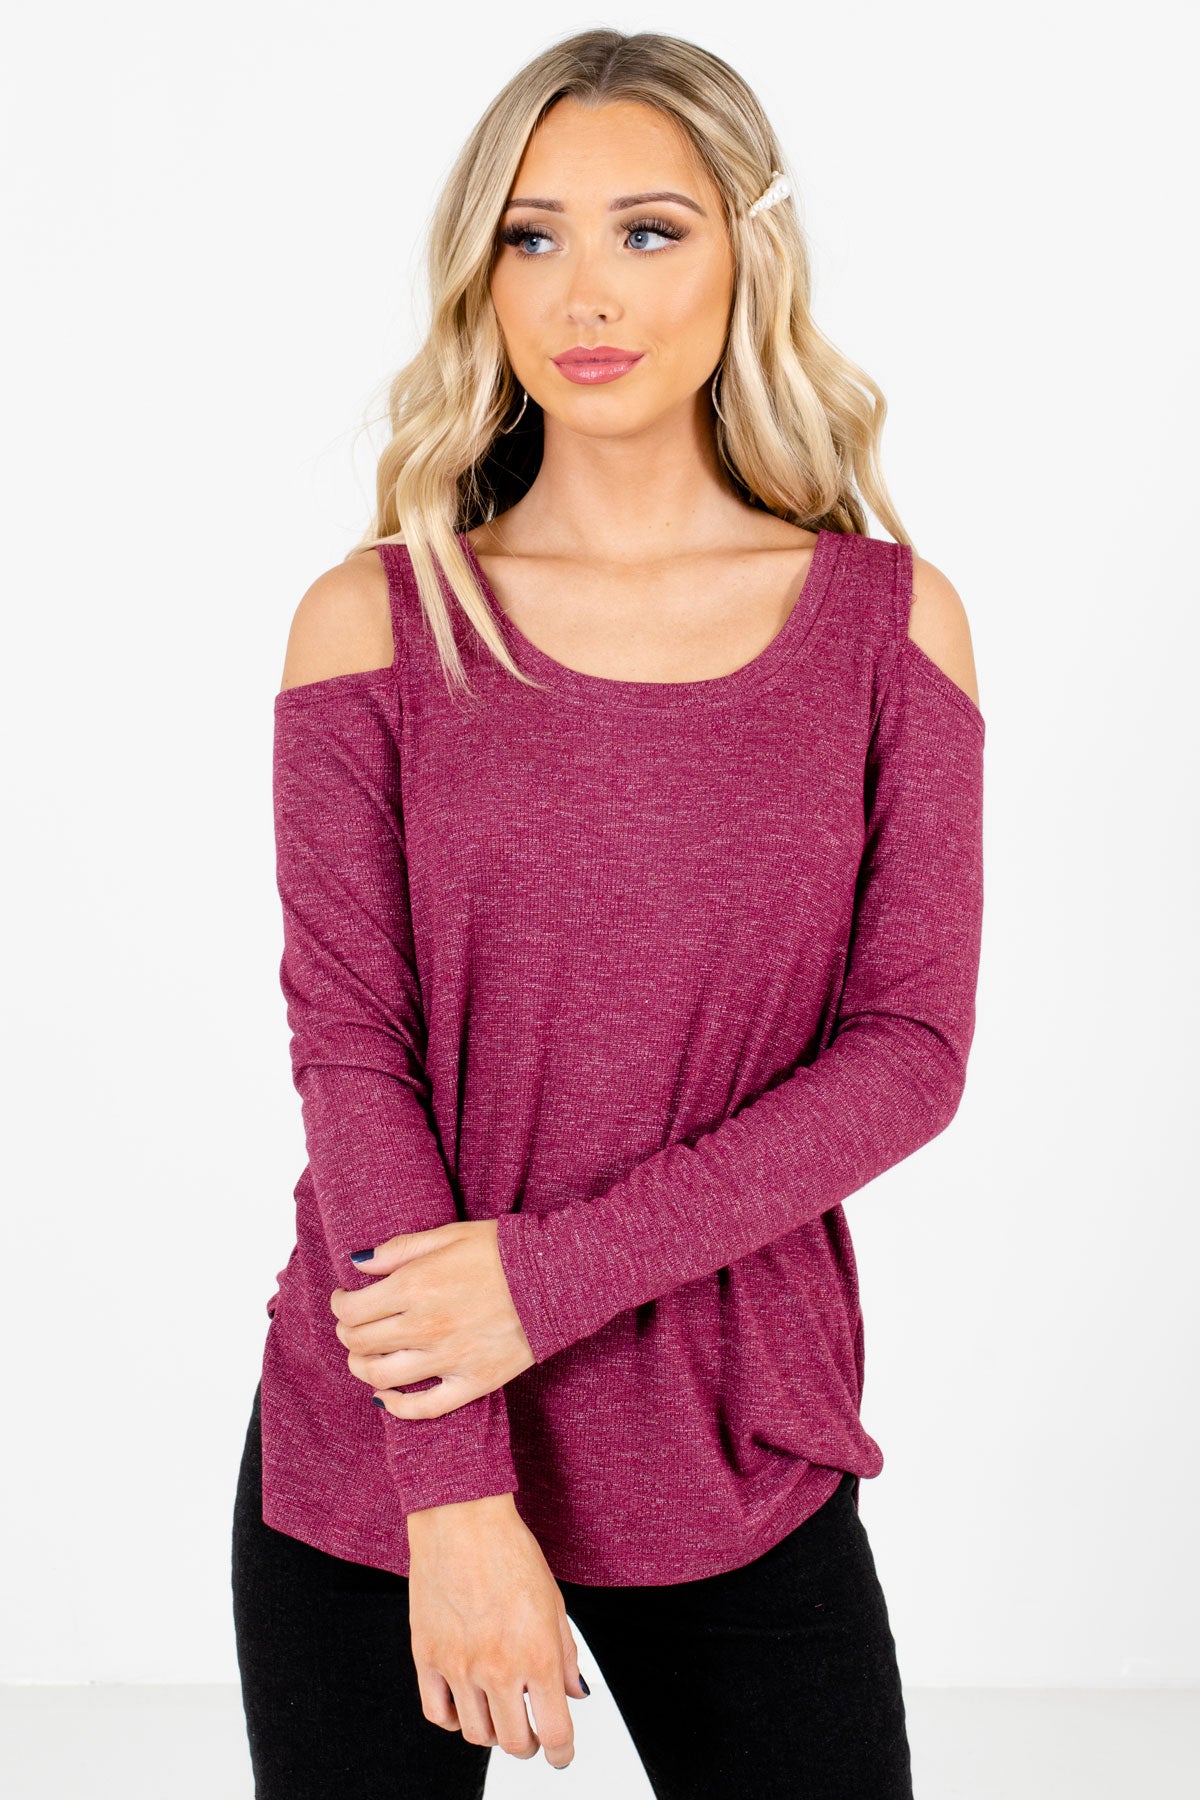 Women’s Purple Round Neckline Boutique Tops